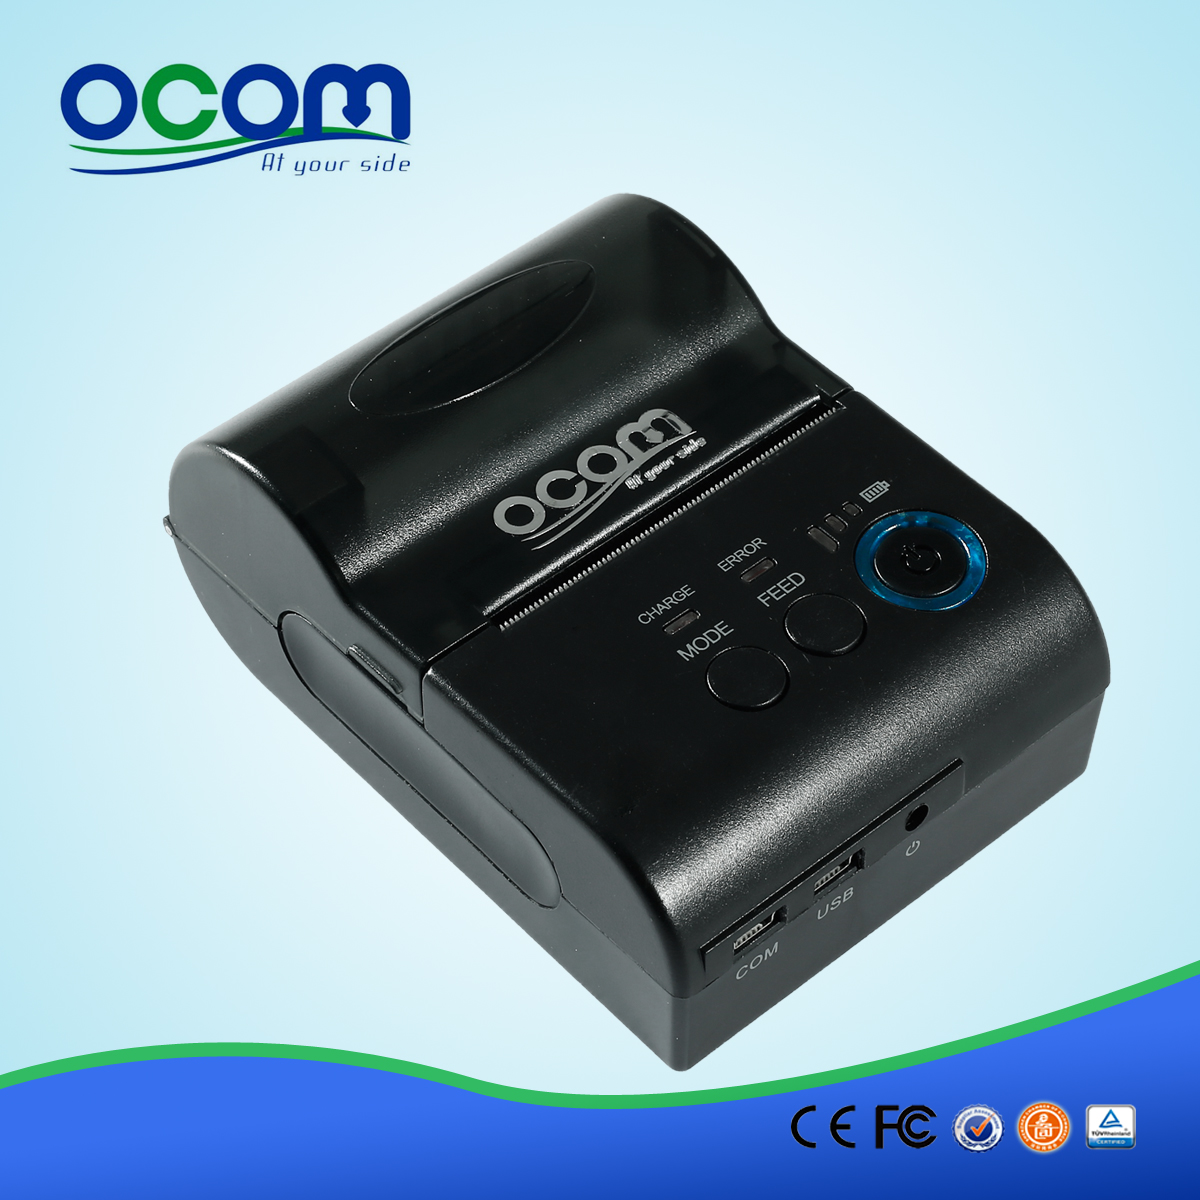 58 Высококачественная Bluetooth термопринтер - OCPP-M03